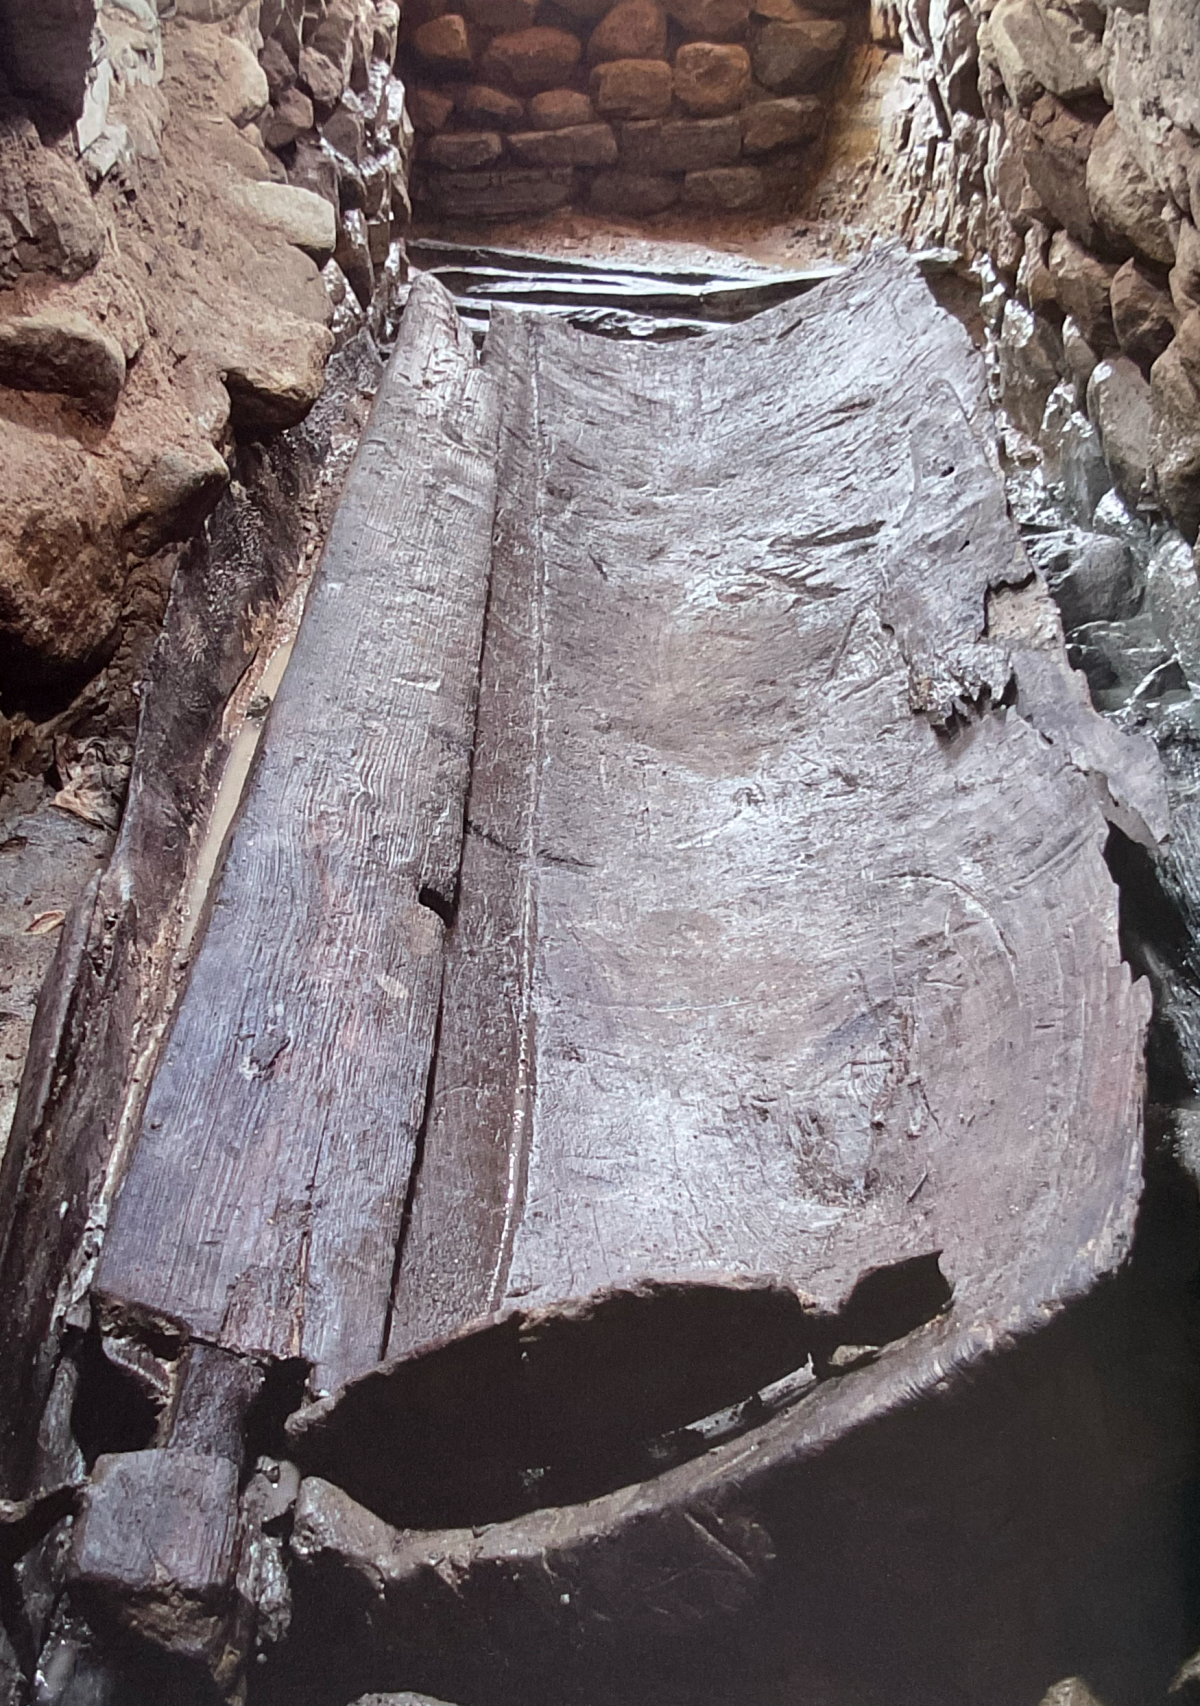 창녕 송현동 7호분 석실 바닥에서 출토된 길이 3.3m의 목관. 일본산 녹나무로 제작돼 일본과의 교류 관계를 보여주는 자료로 해석되고 있다. 국립가야문화재연구소 제공